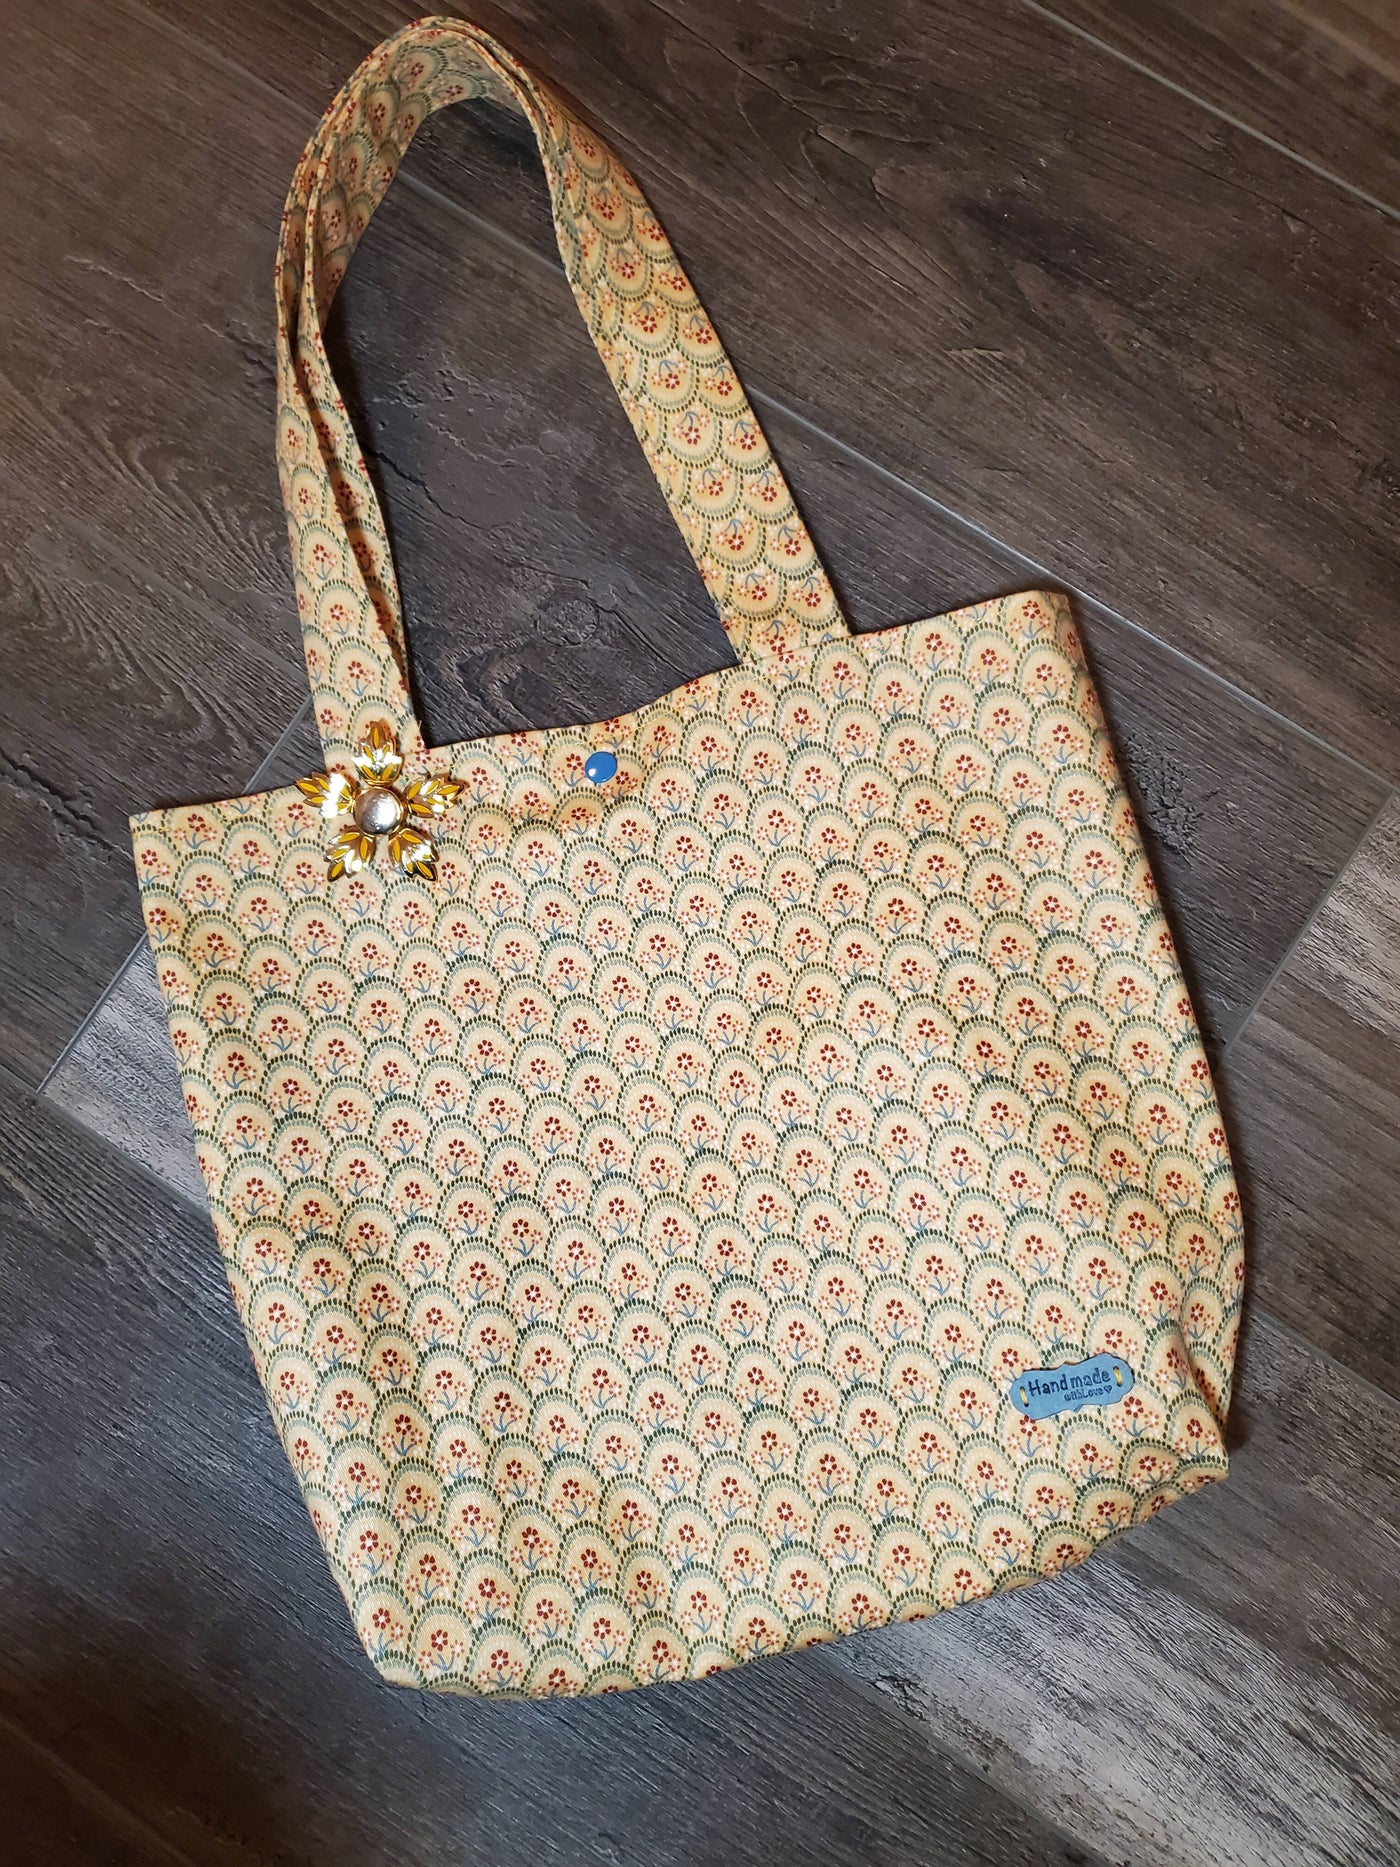 Unique VIntage Pattern Bag